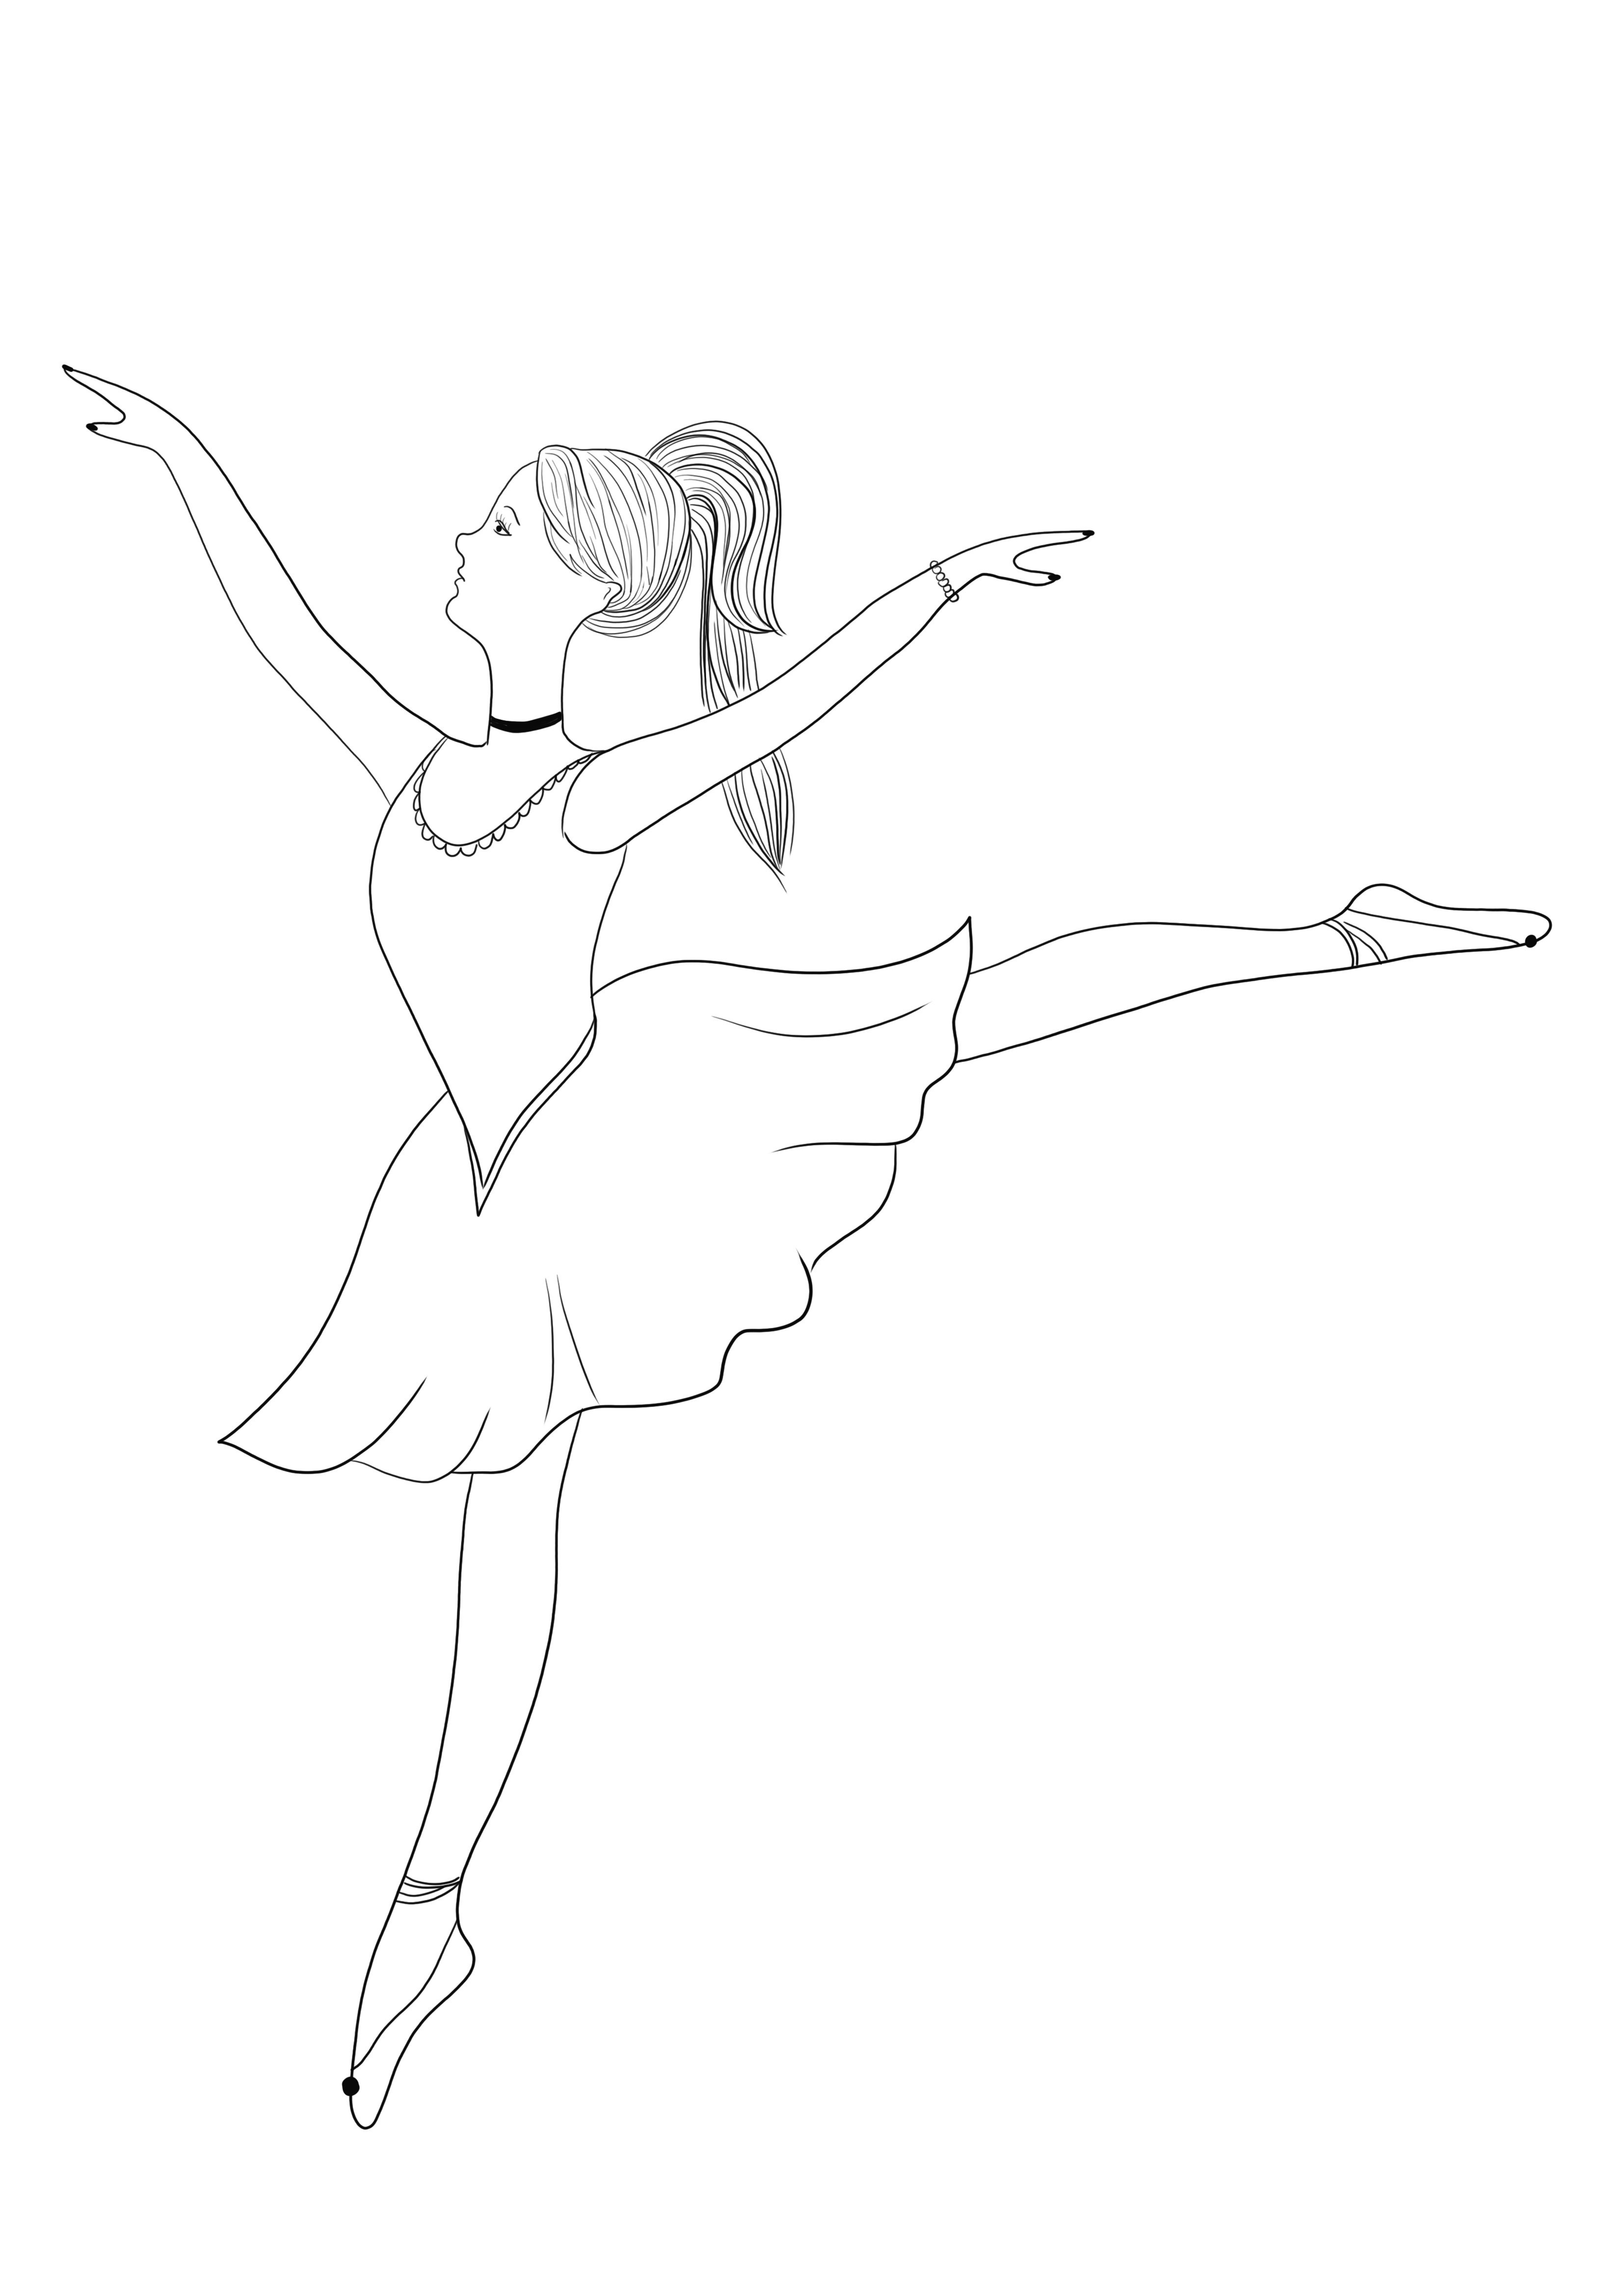 Gracious Ballerina immagine stampabile e da colorare gratuita per bambini di tutte le età